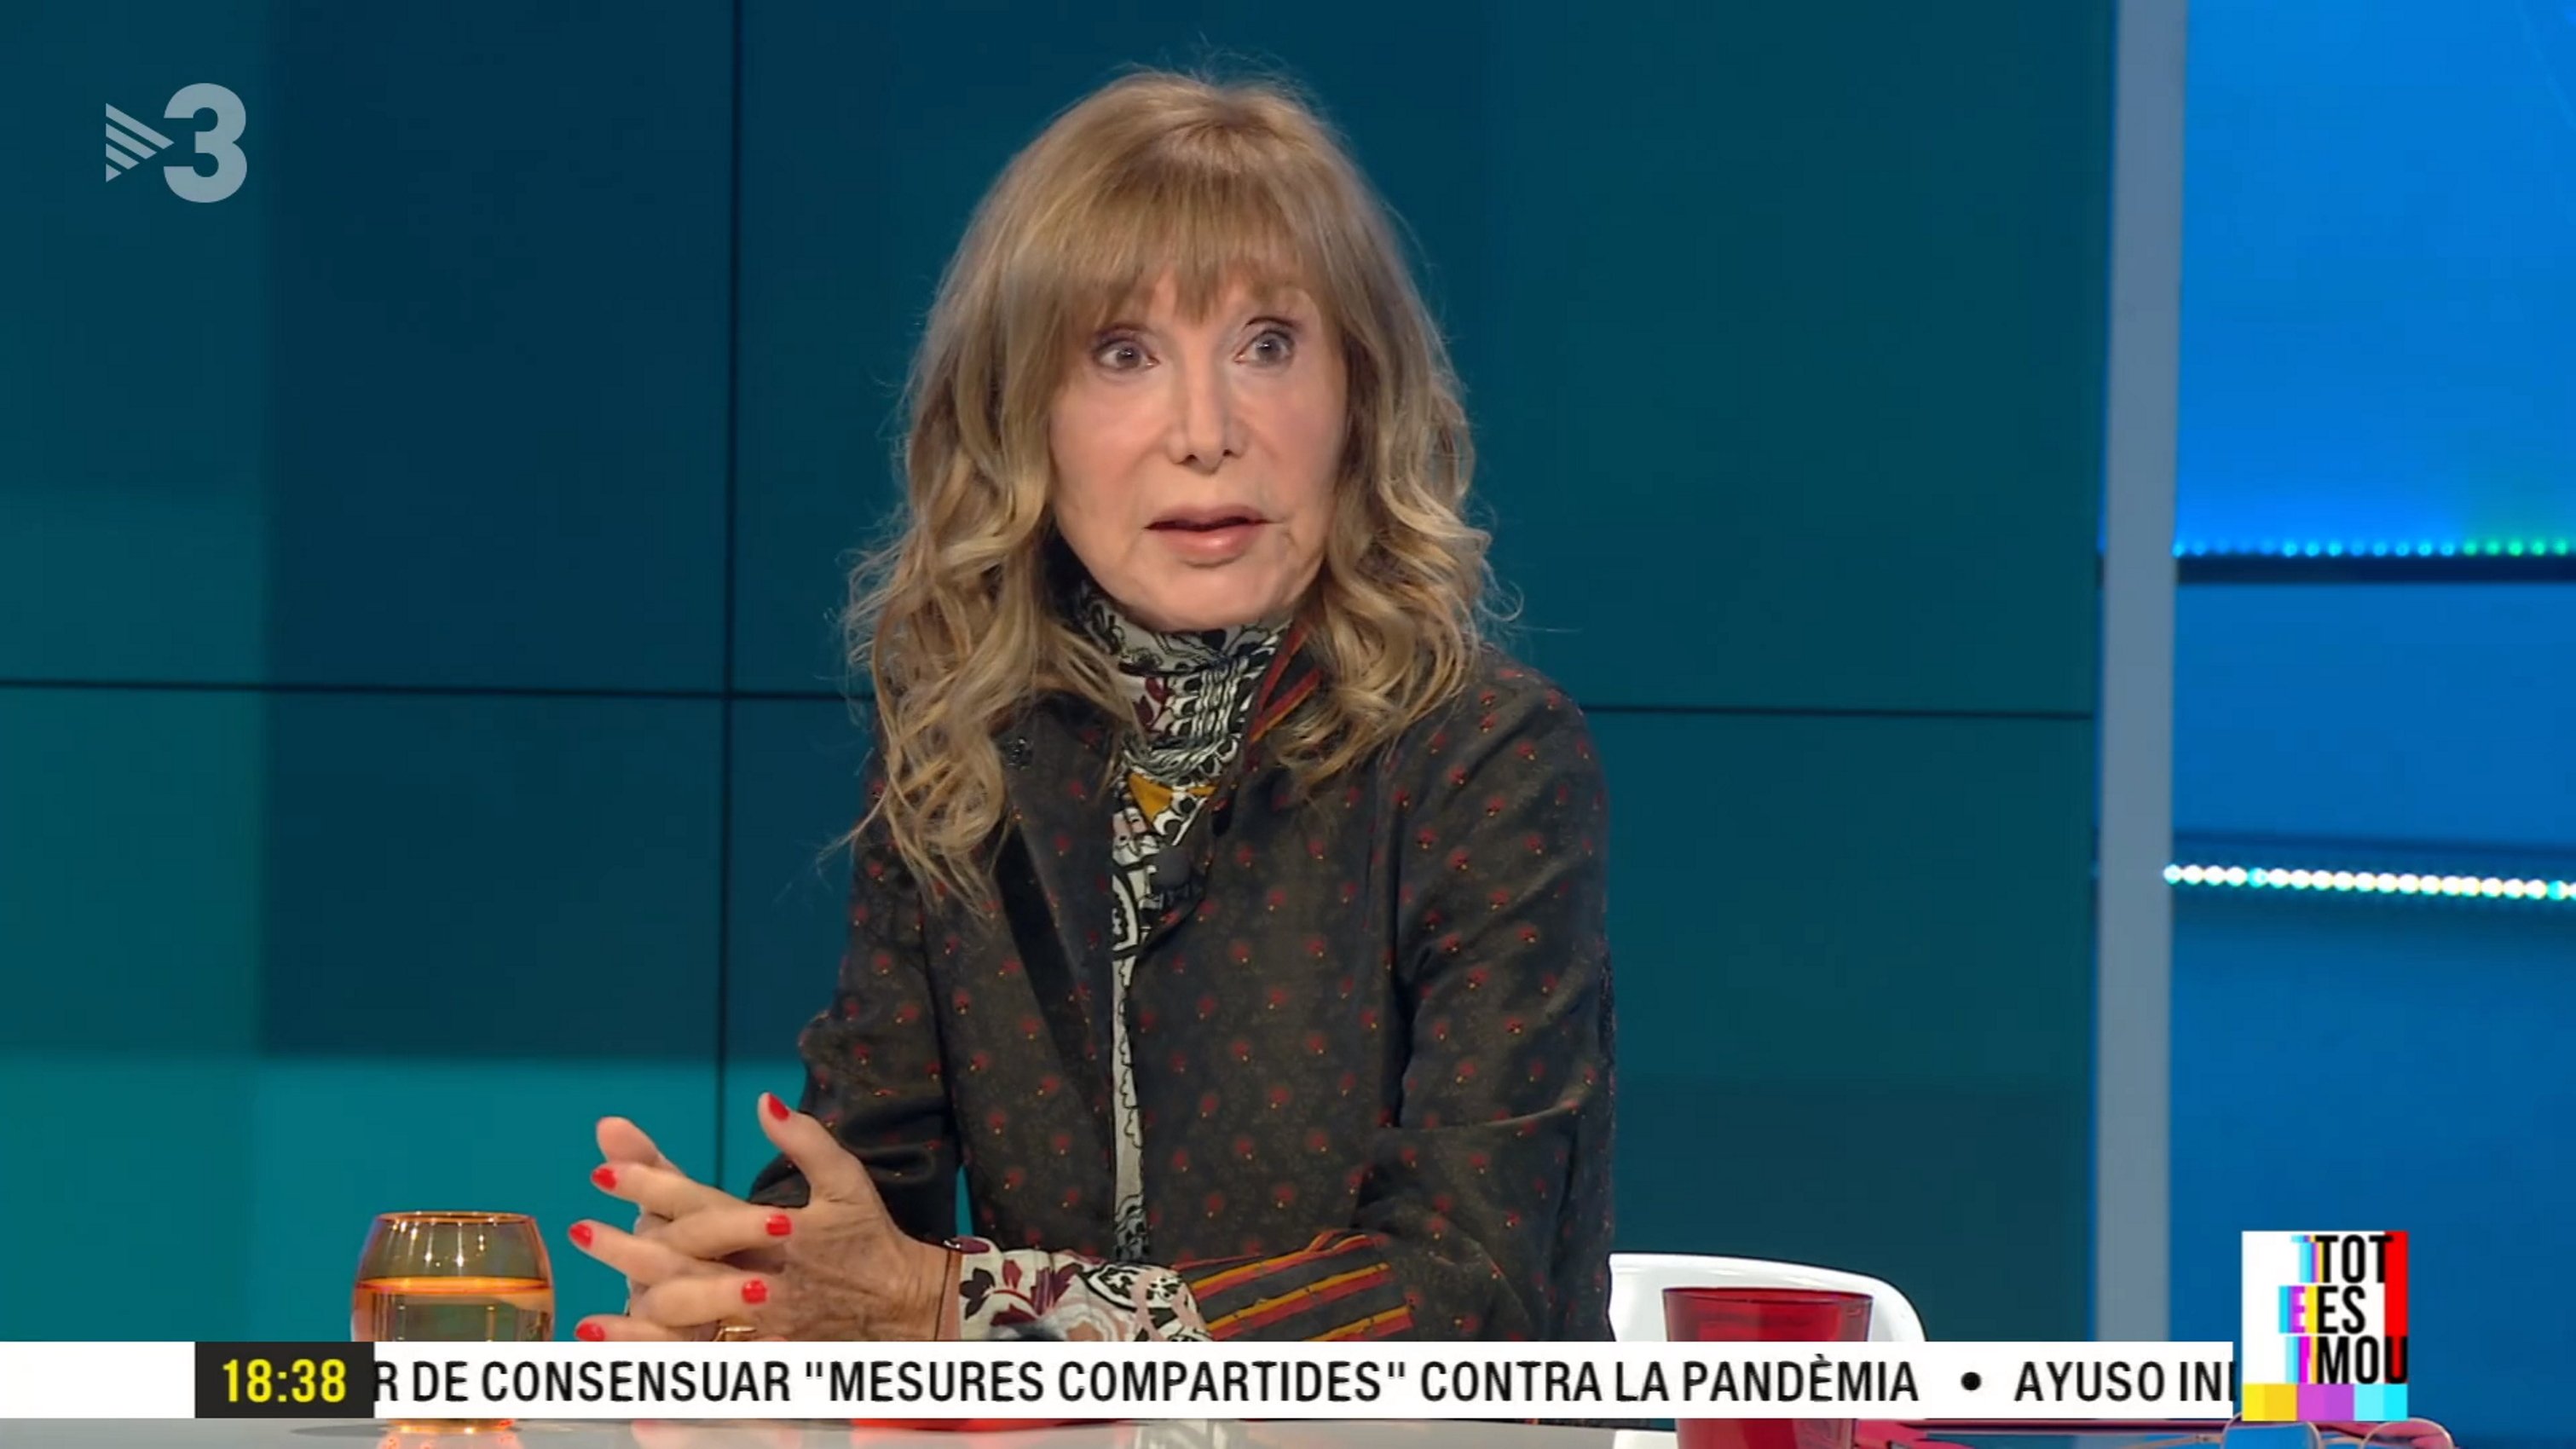 Pilar Eyre, indignada pel menyspreu públic del director de Catalunya Ràdio